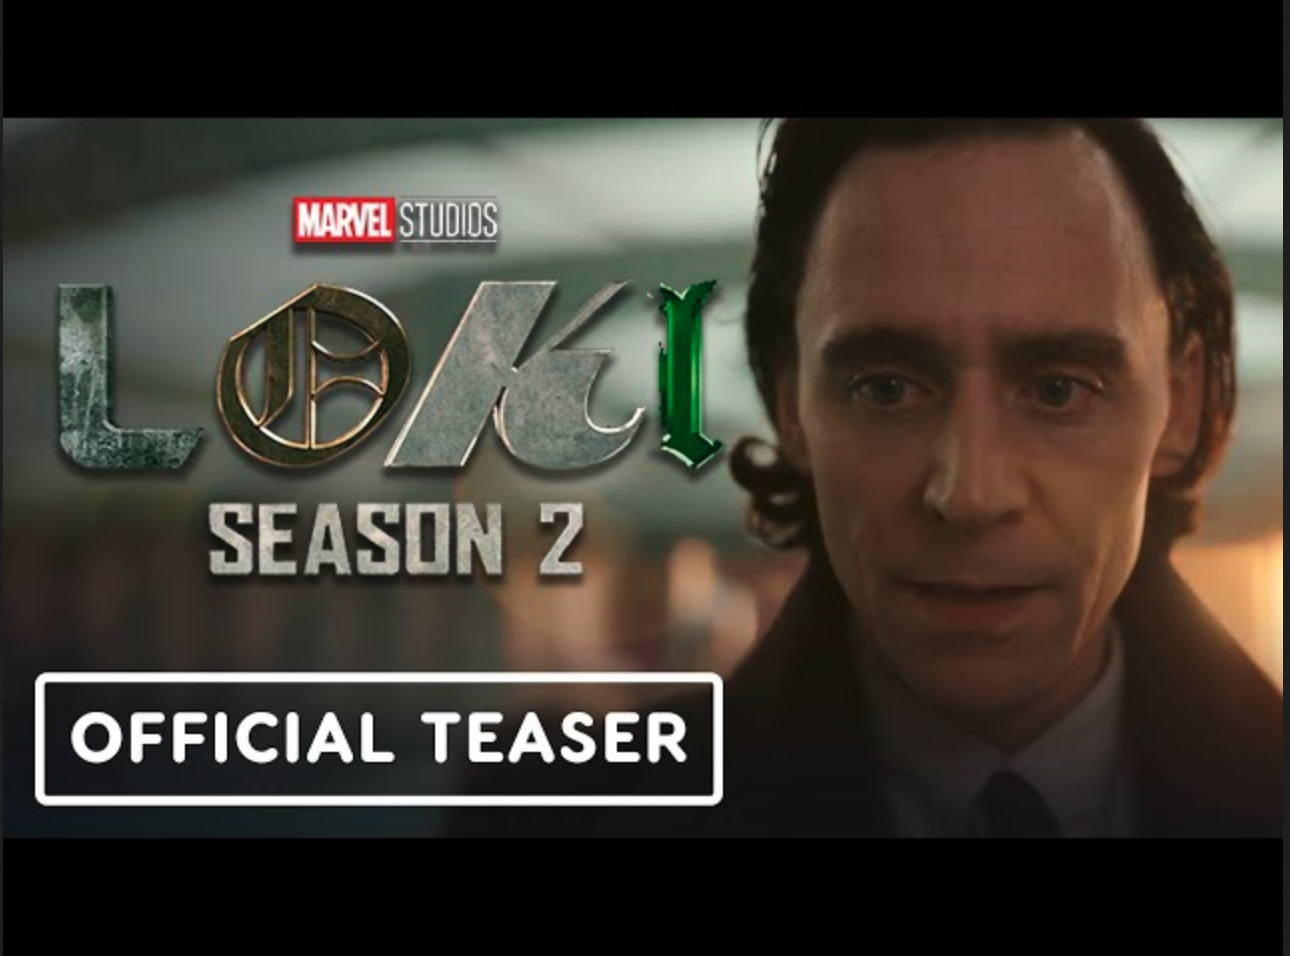 Loki season 2 new official trailer gives a first look at Ke Huy